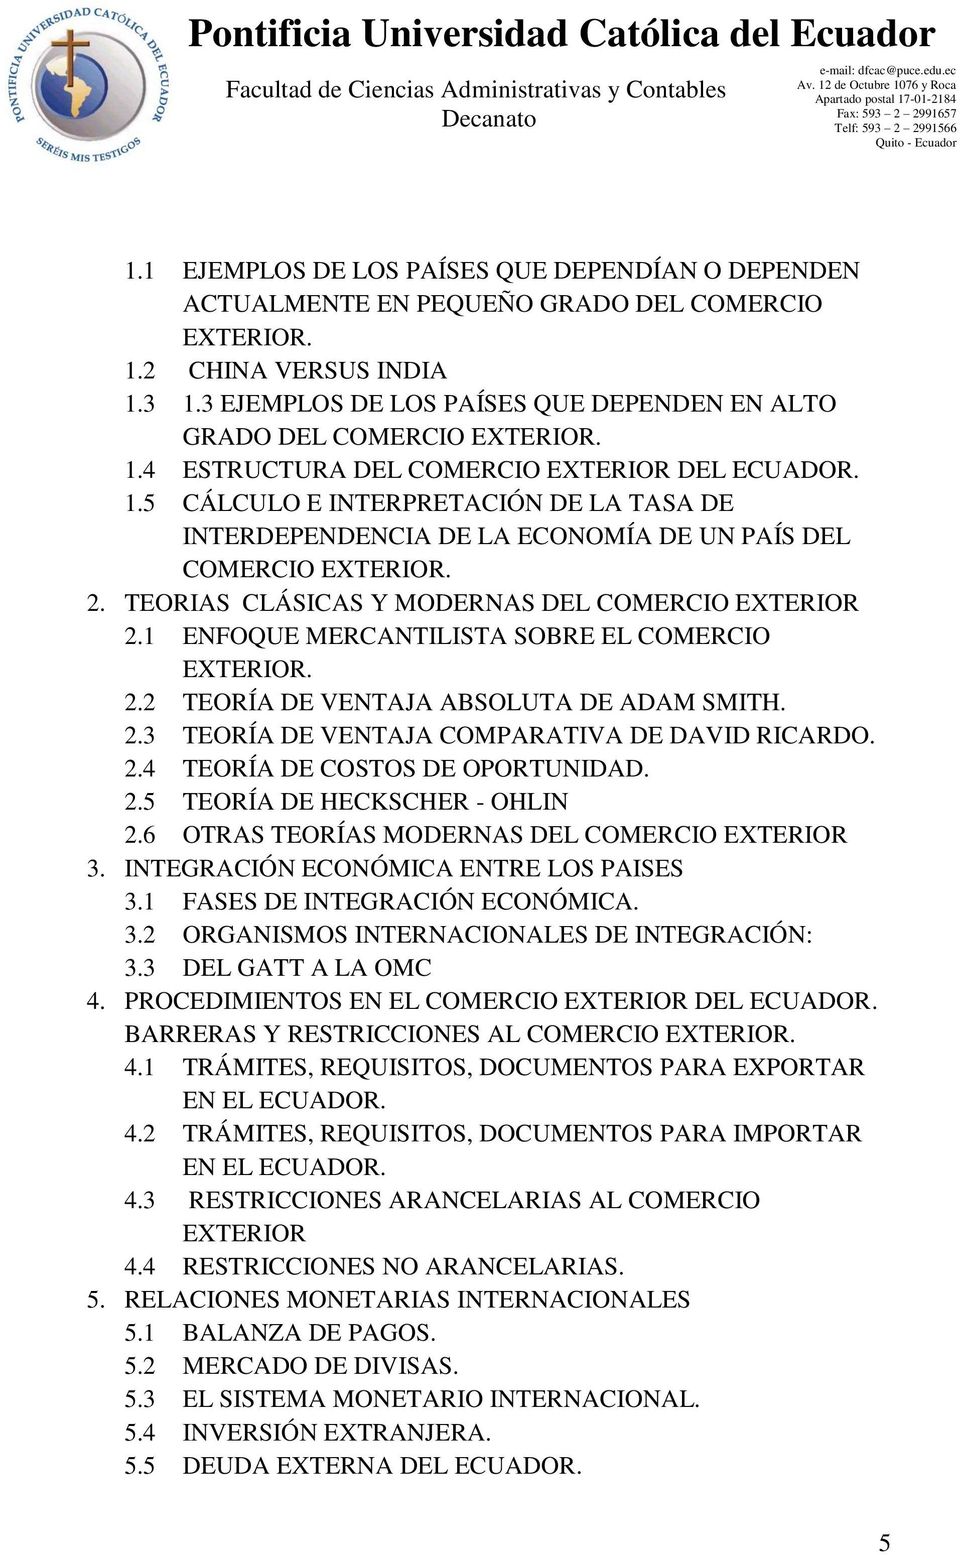 2. TEORIAS CLÁSICAS Y MODERNAS DEL COMERCIO EXTERIOR 2.1 ENFOQUE MERCANTILISTA SOBRE EL COMERCIO EXTERIOR. 2.2 TEORÍA DE VENTAJA ABSOLUTA DE ADAM SMITH. 2.3 TEORÍA DE VENTAJA COMPARATIVA DE DAVID RICARDO.